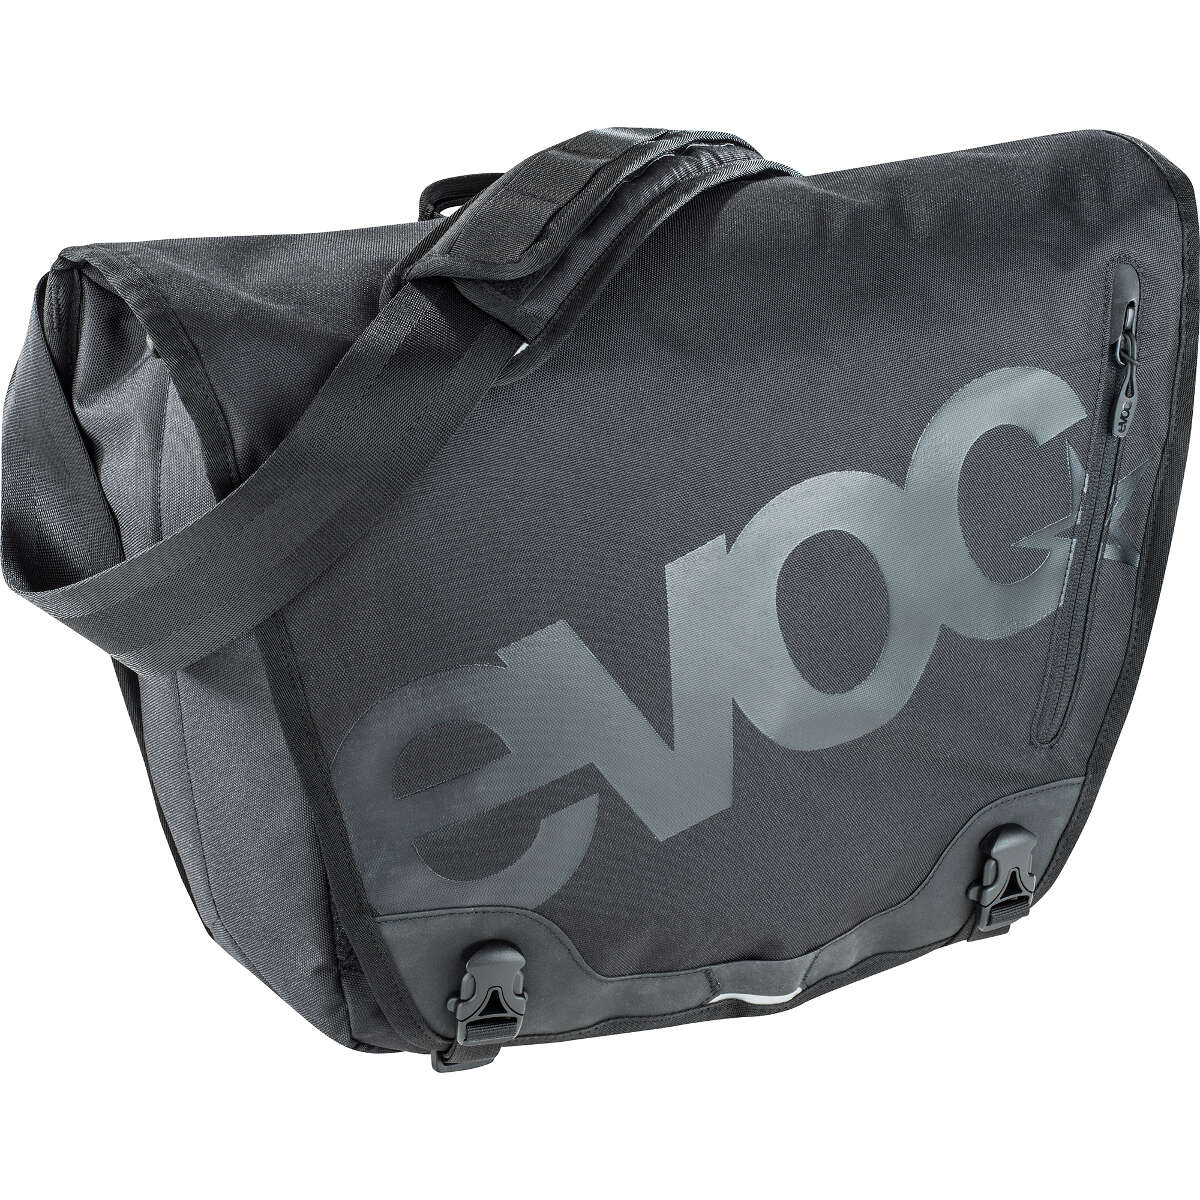 Evoc Messenger Bag Messenger Bag Black, 20 Liter